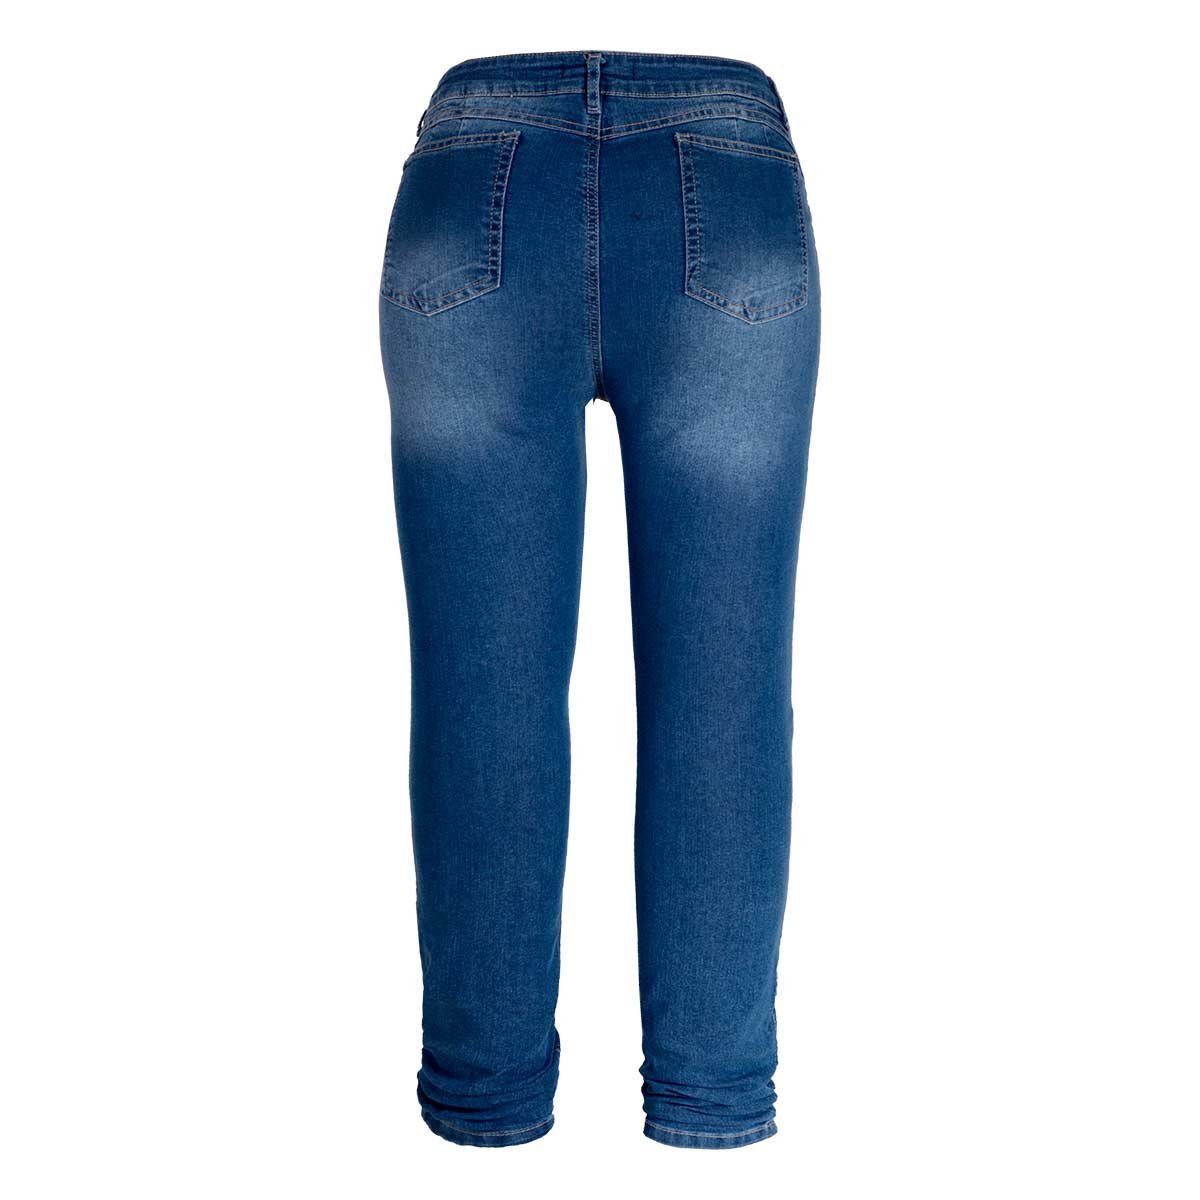 Jeans con Bordado Fukka Plus